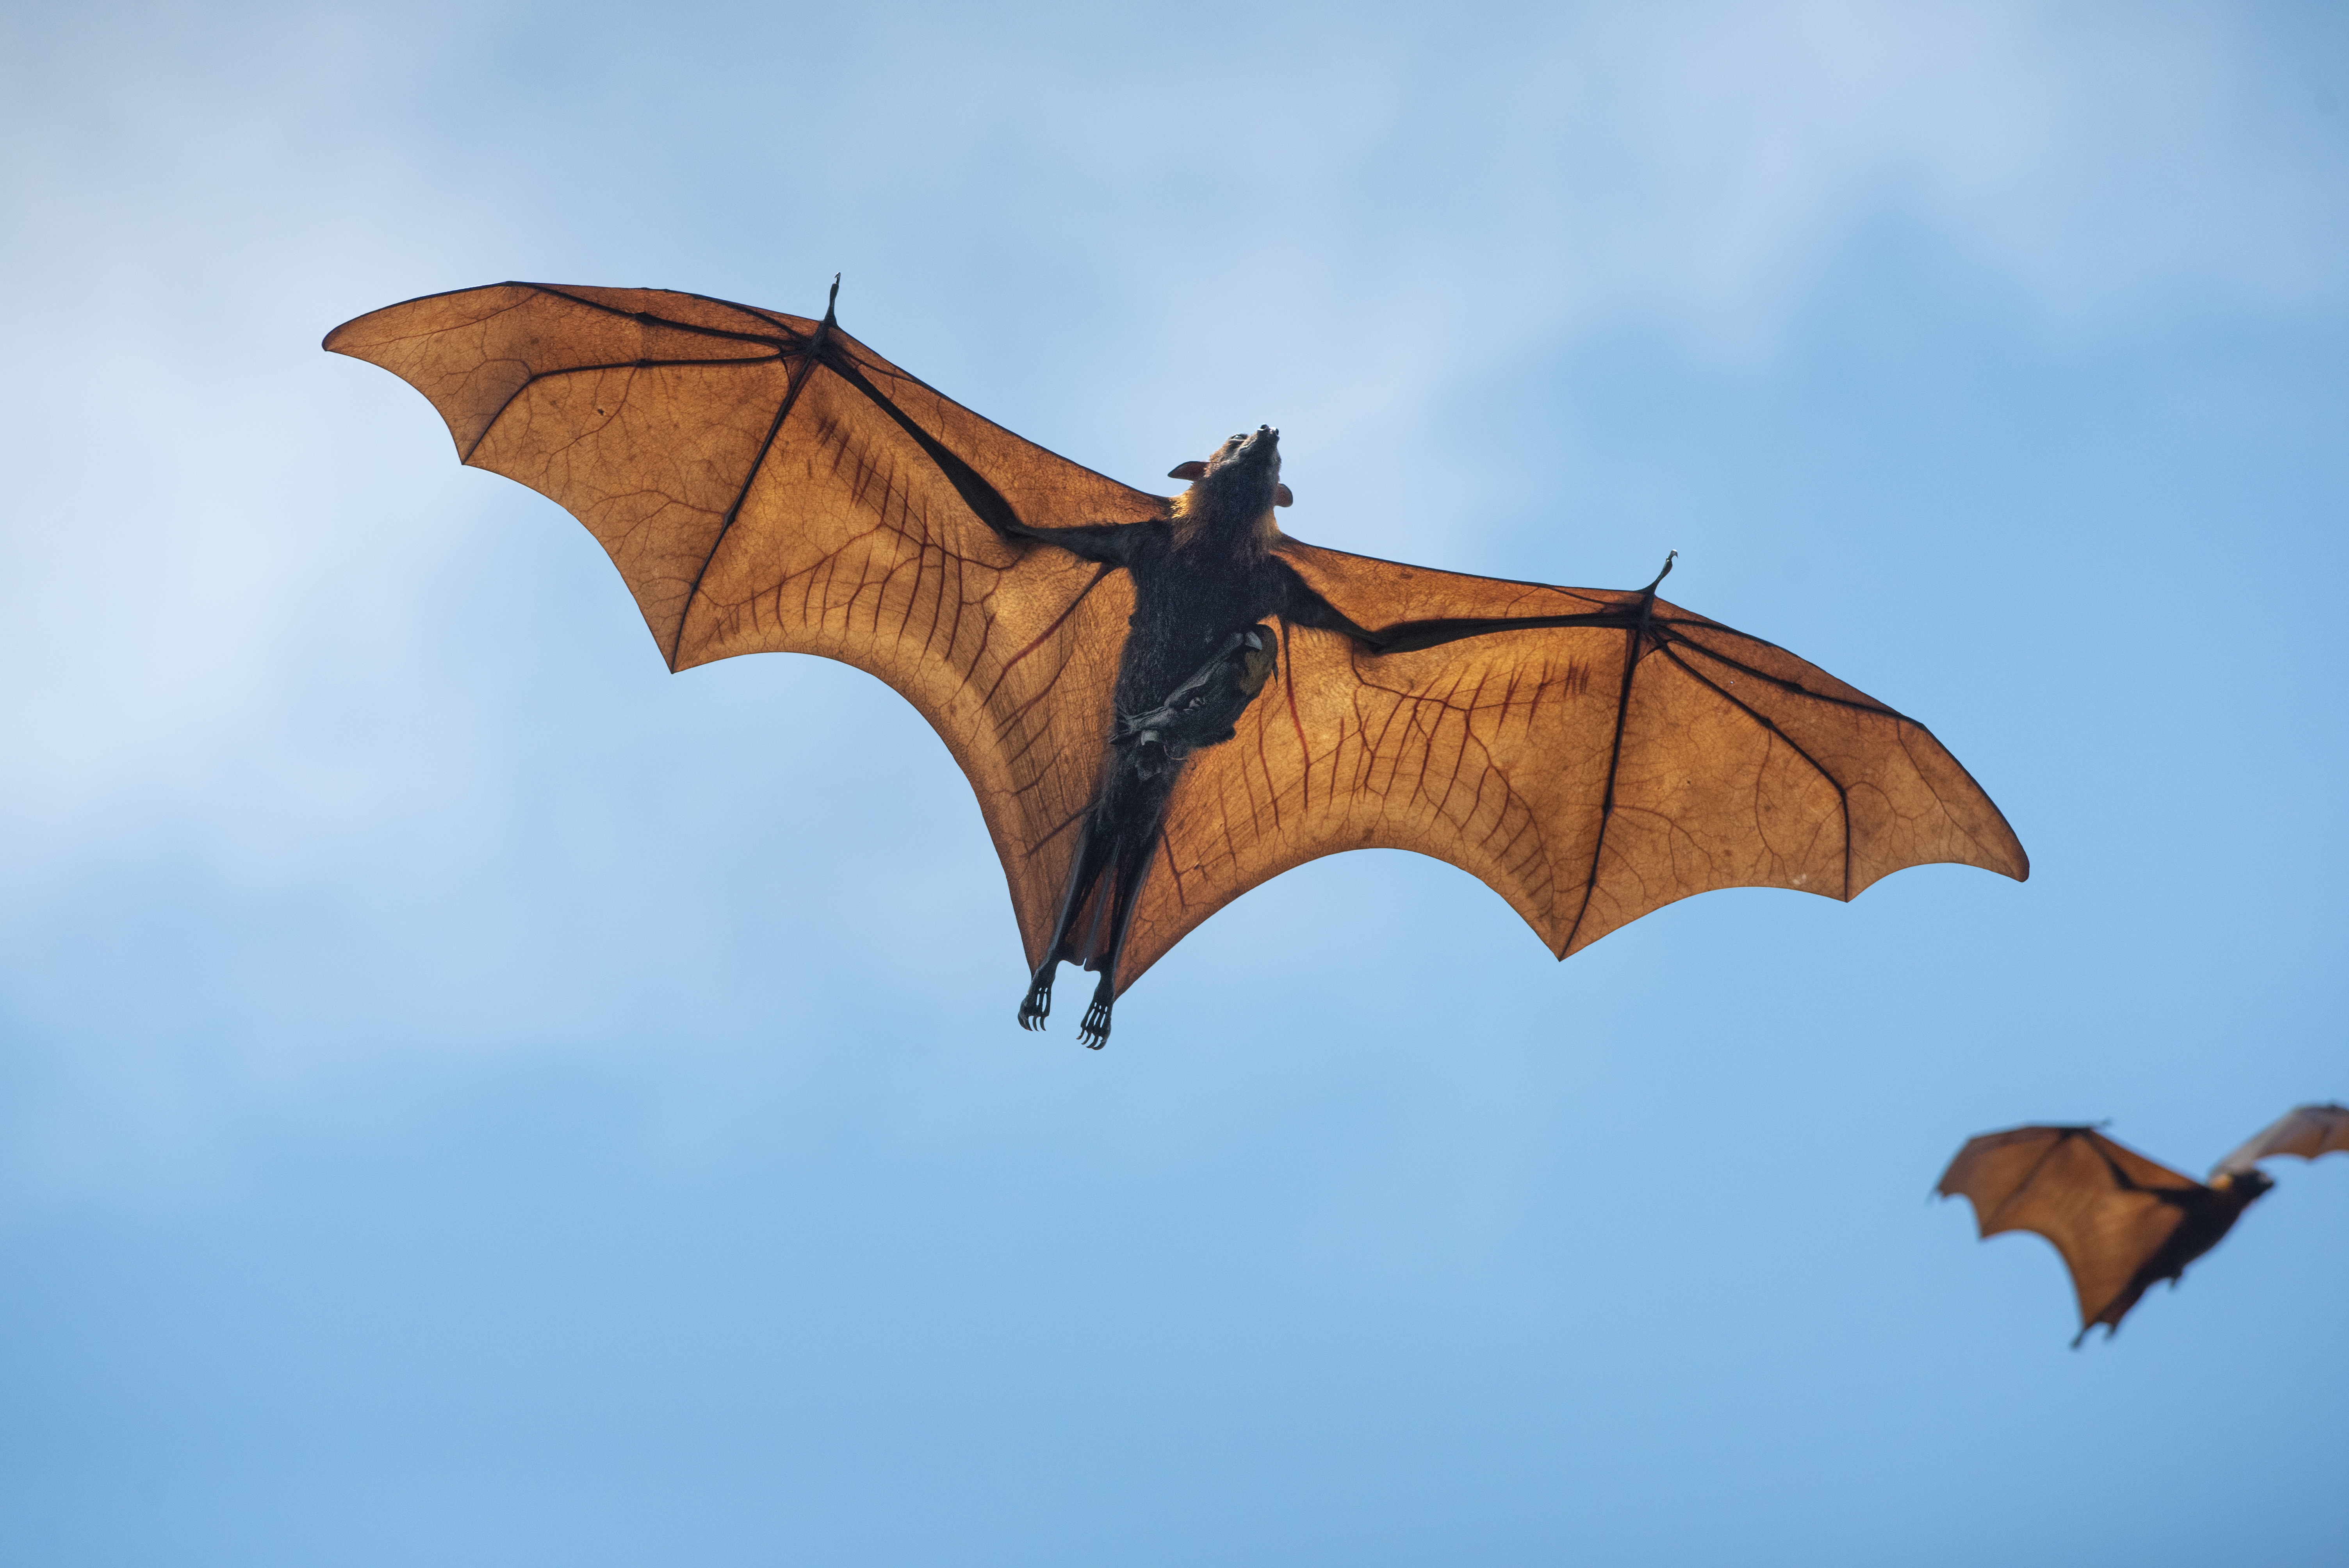 bat wingspan